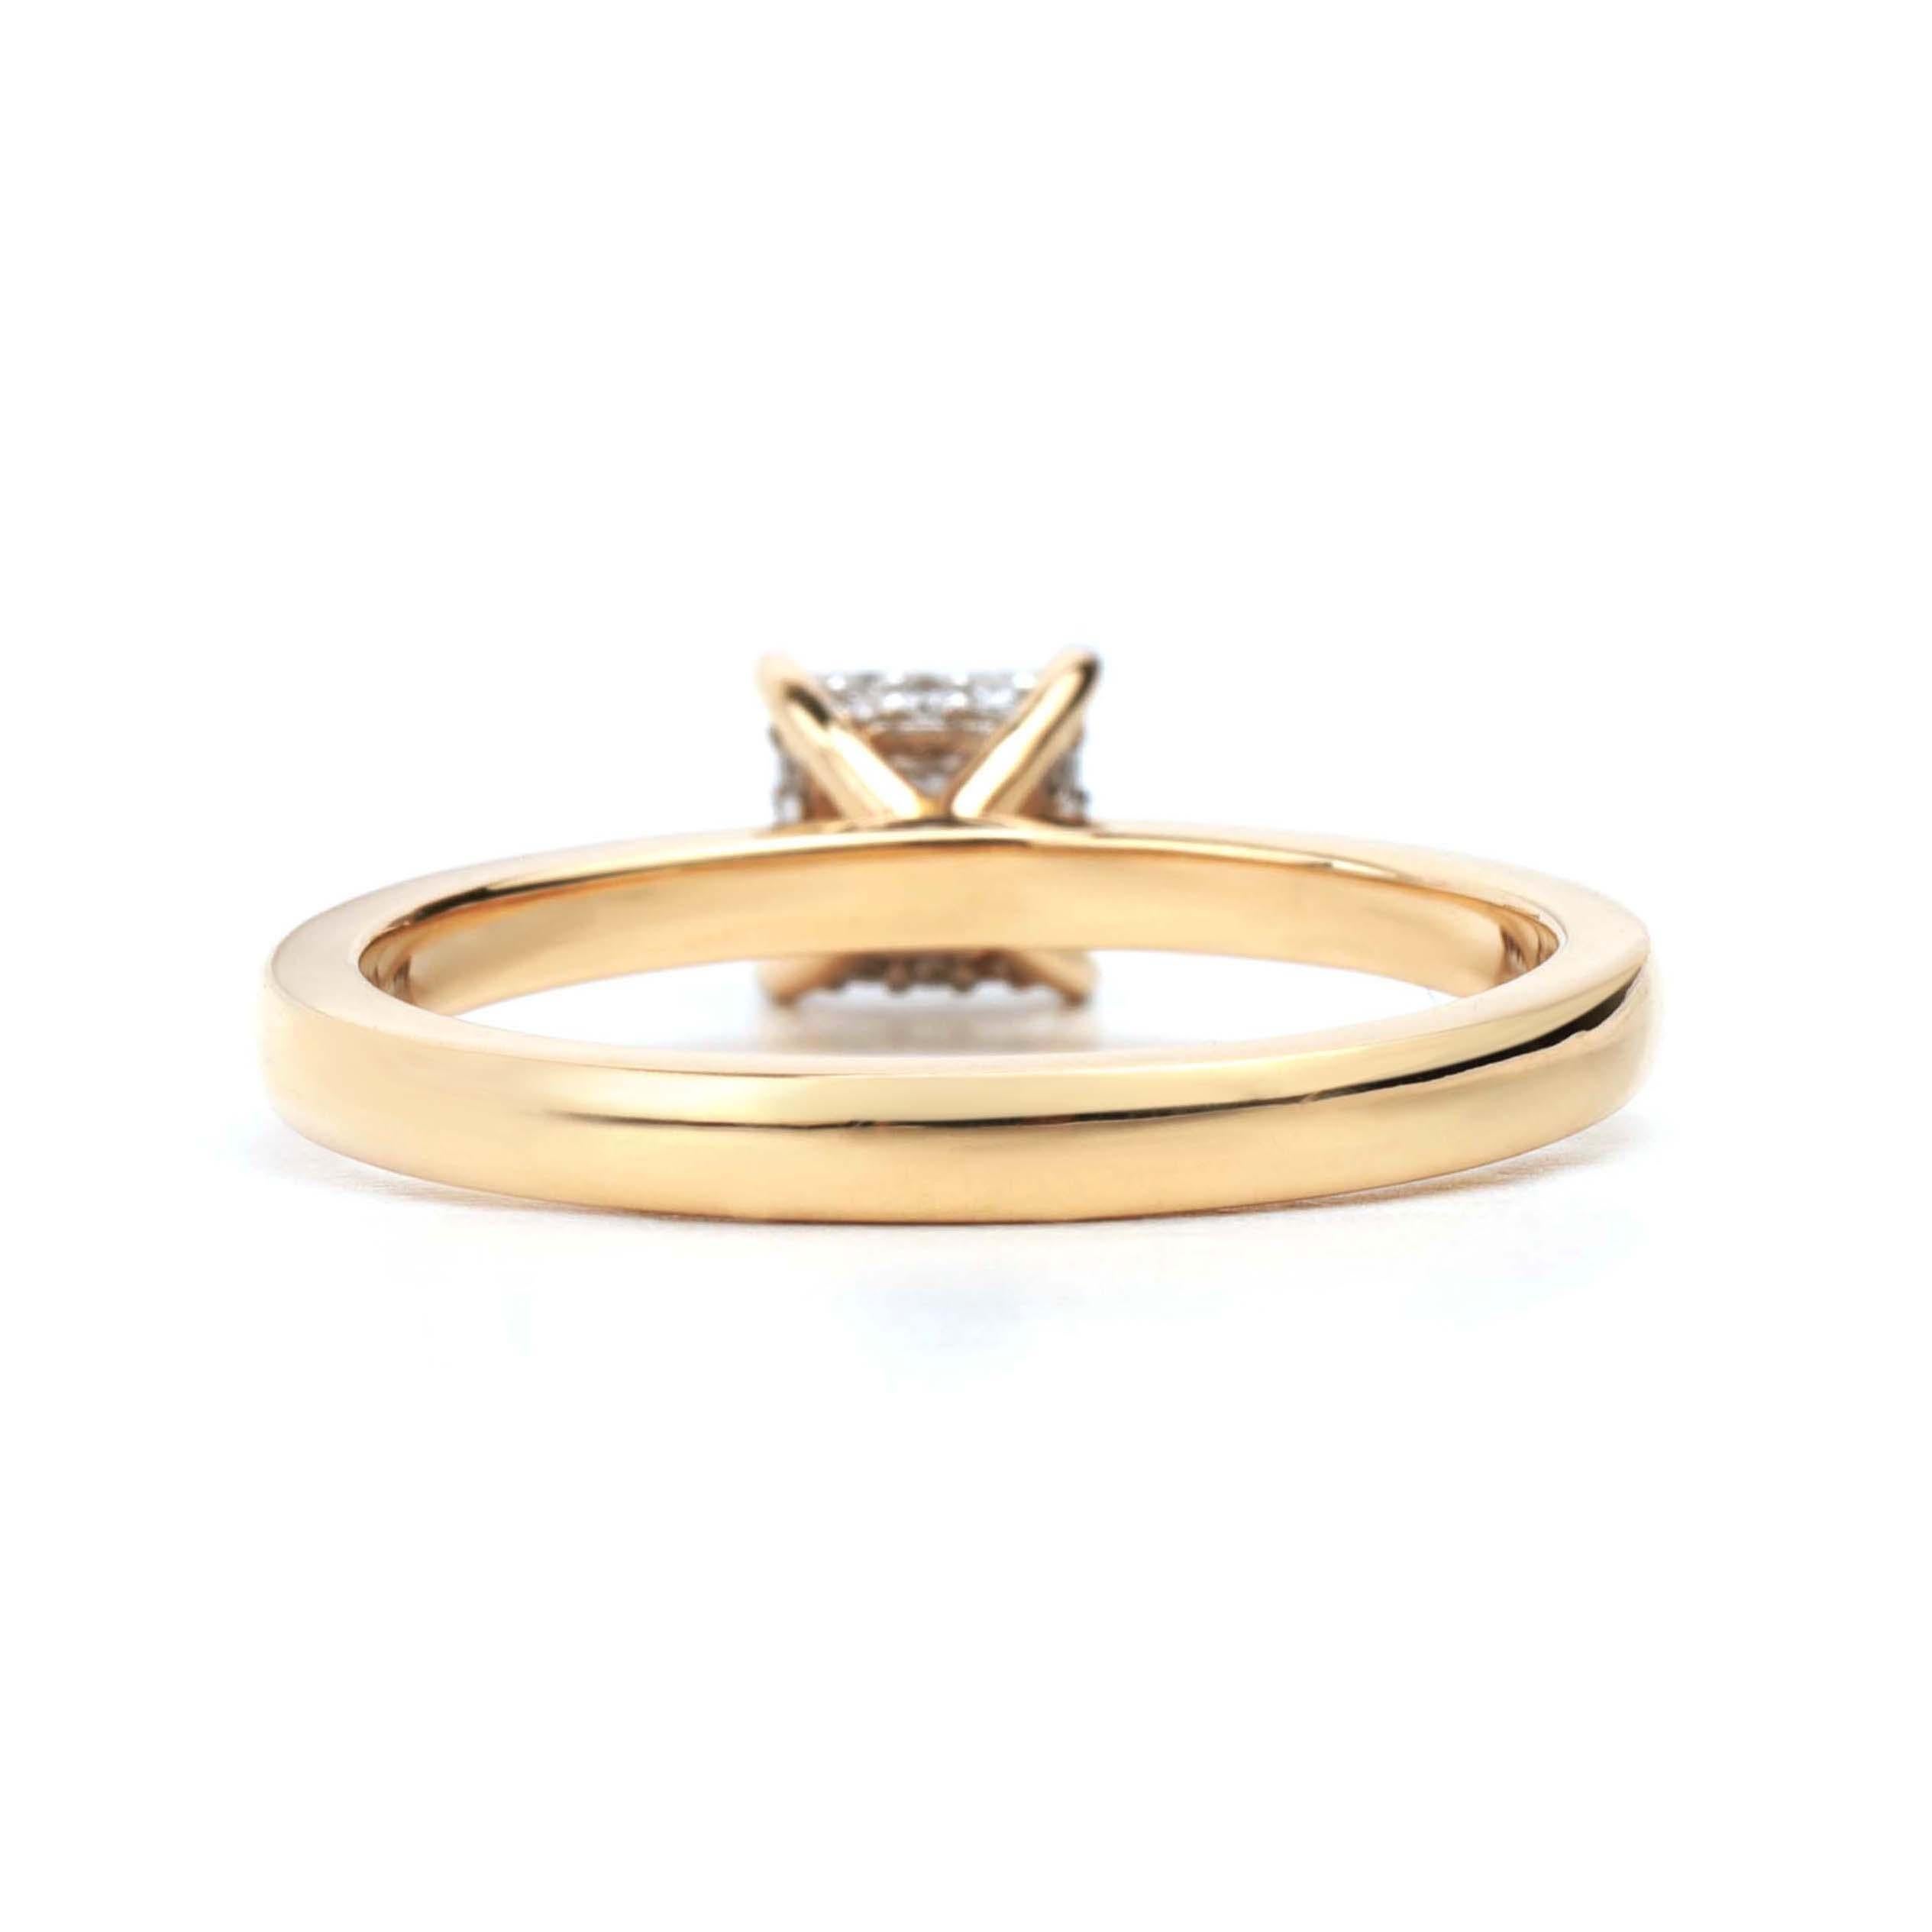 GIA Report Certified 0.65 TCW G VS Princess Cut Diamond Solitaire Engagement Ring

Disponible en or blanc 18k.

Le même design peut être réalisé avec d'autres pierres précieuses sur demande.

Détails du produit :

- Or massif

- Pierre centrale de